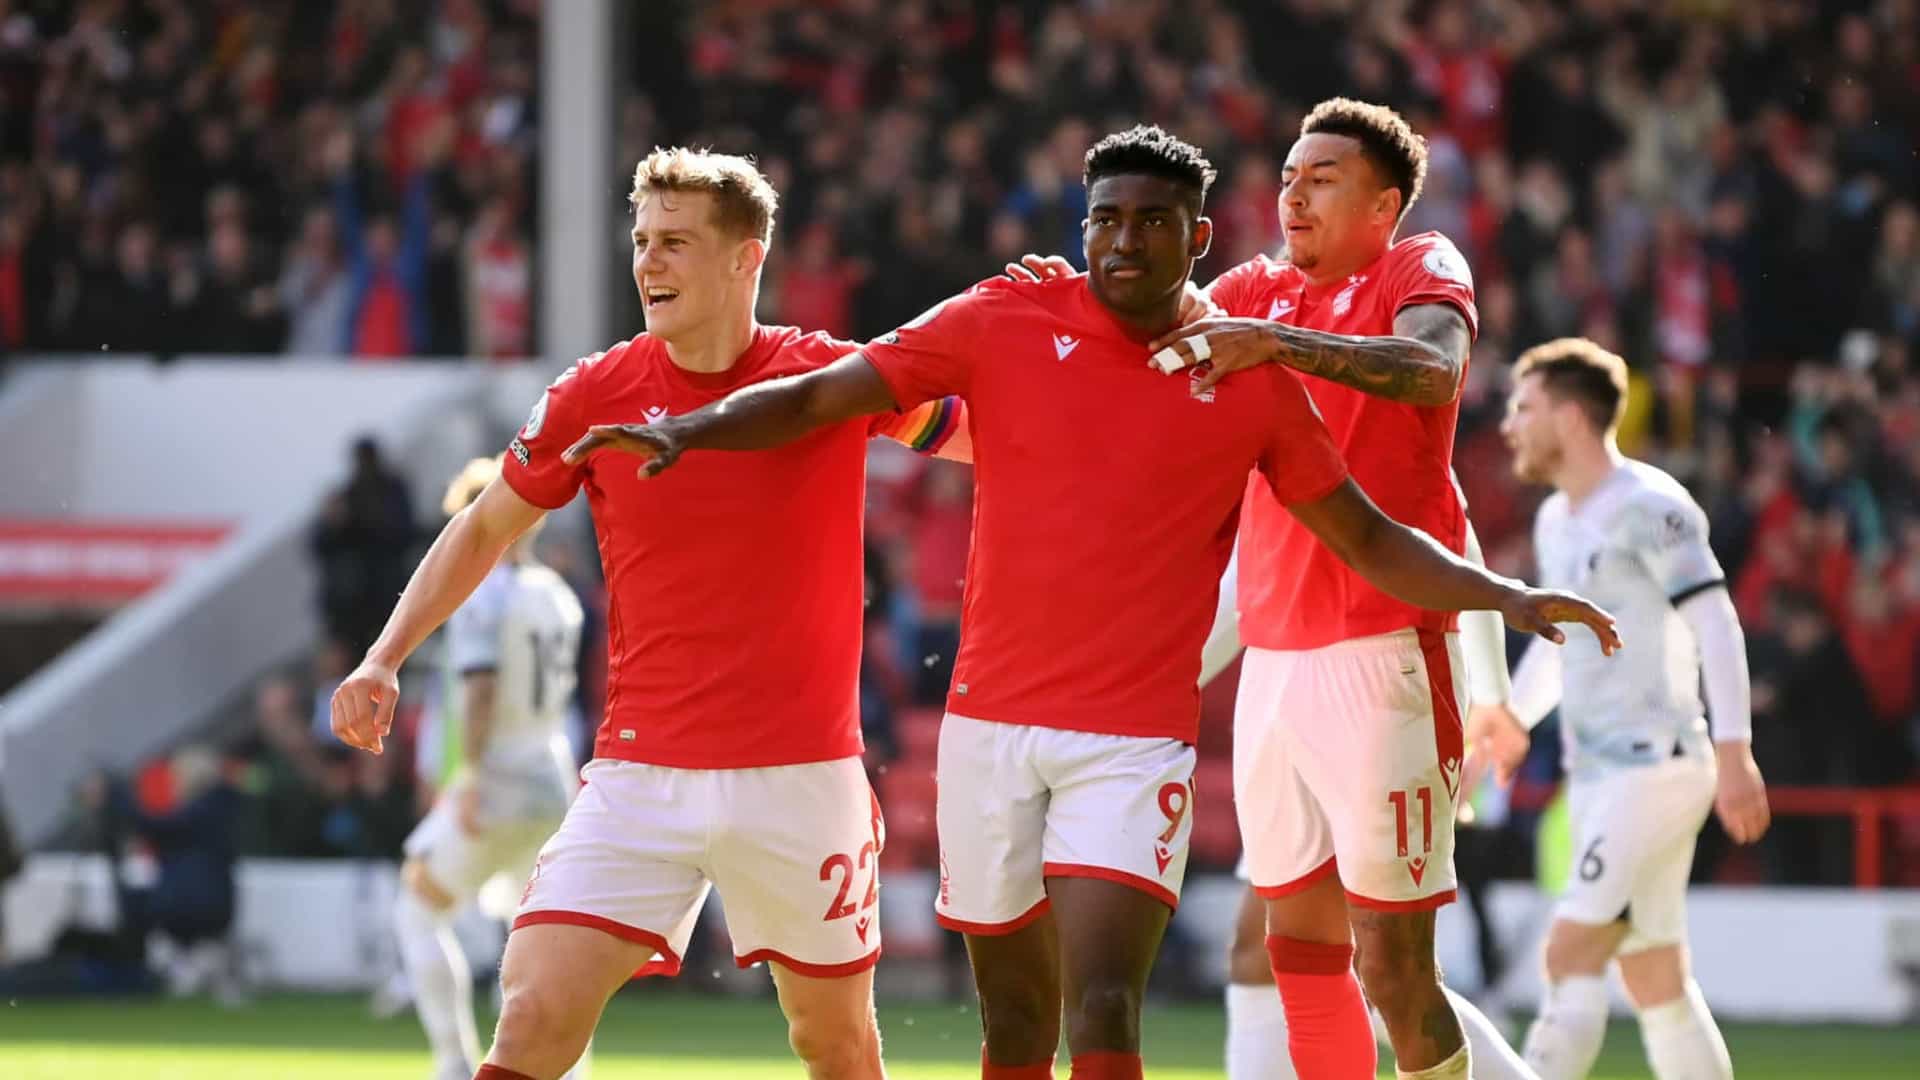 Le promu Nottingham Forest fait chuter Liverpool grâce à ses africains